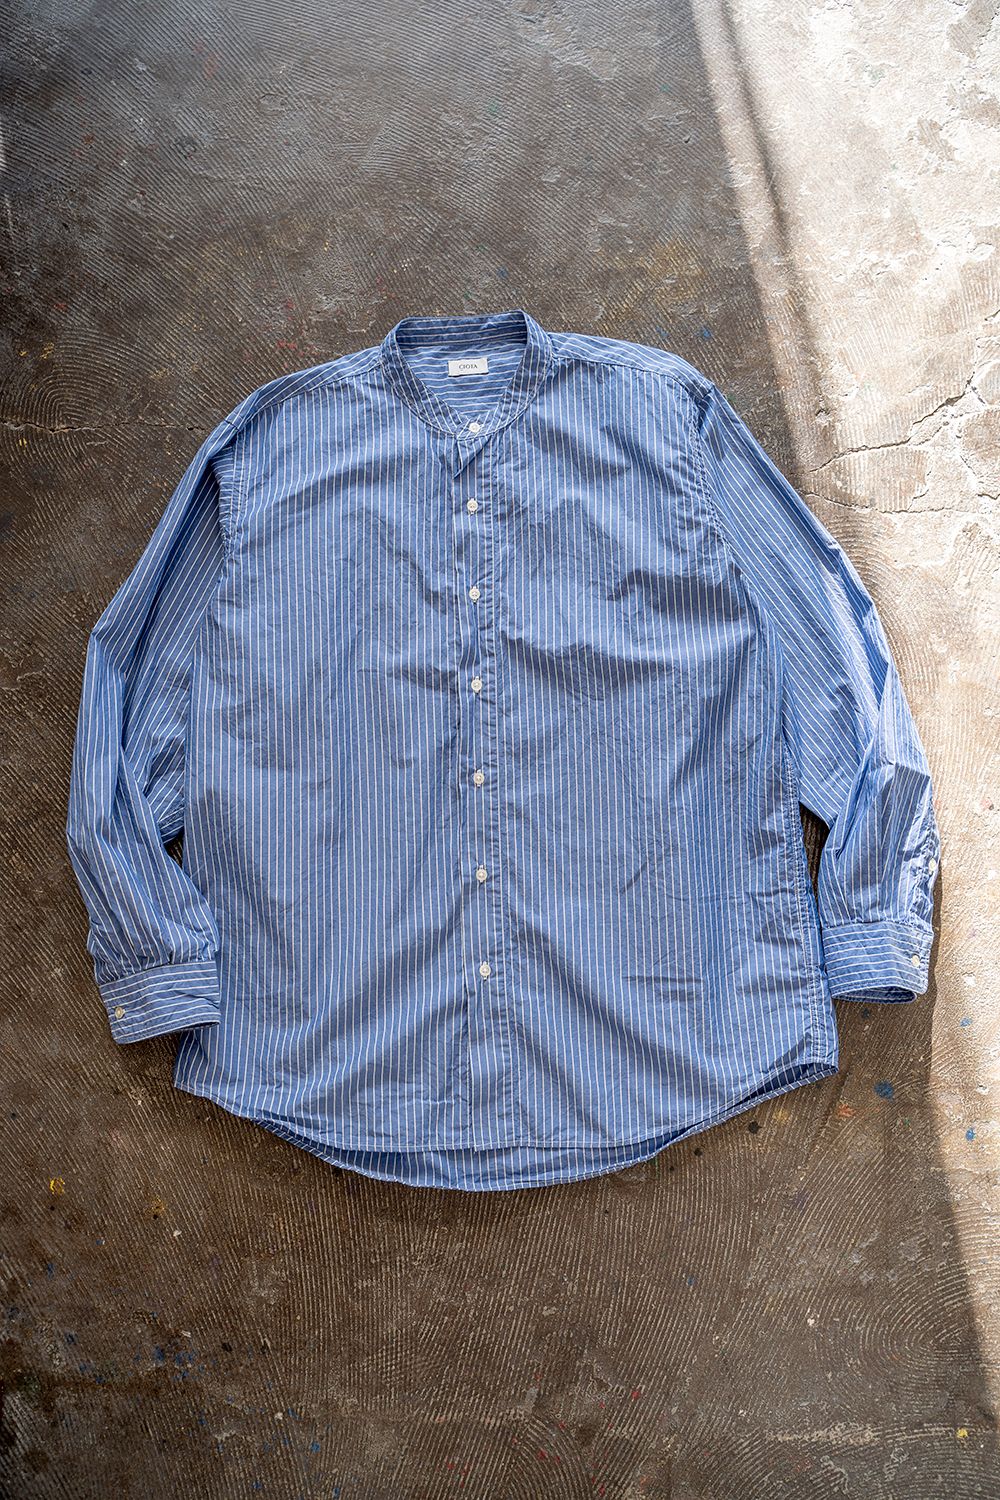 【ラスト1点】スビンコットンタイプライターバンドカラーシャツ(PENCIL STRIPE) - 4(S)